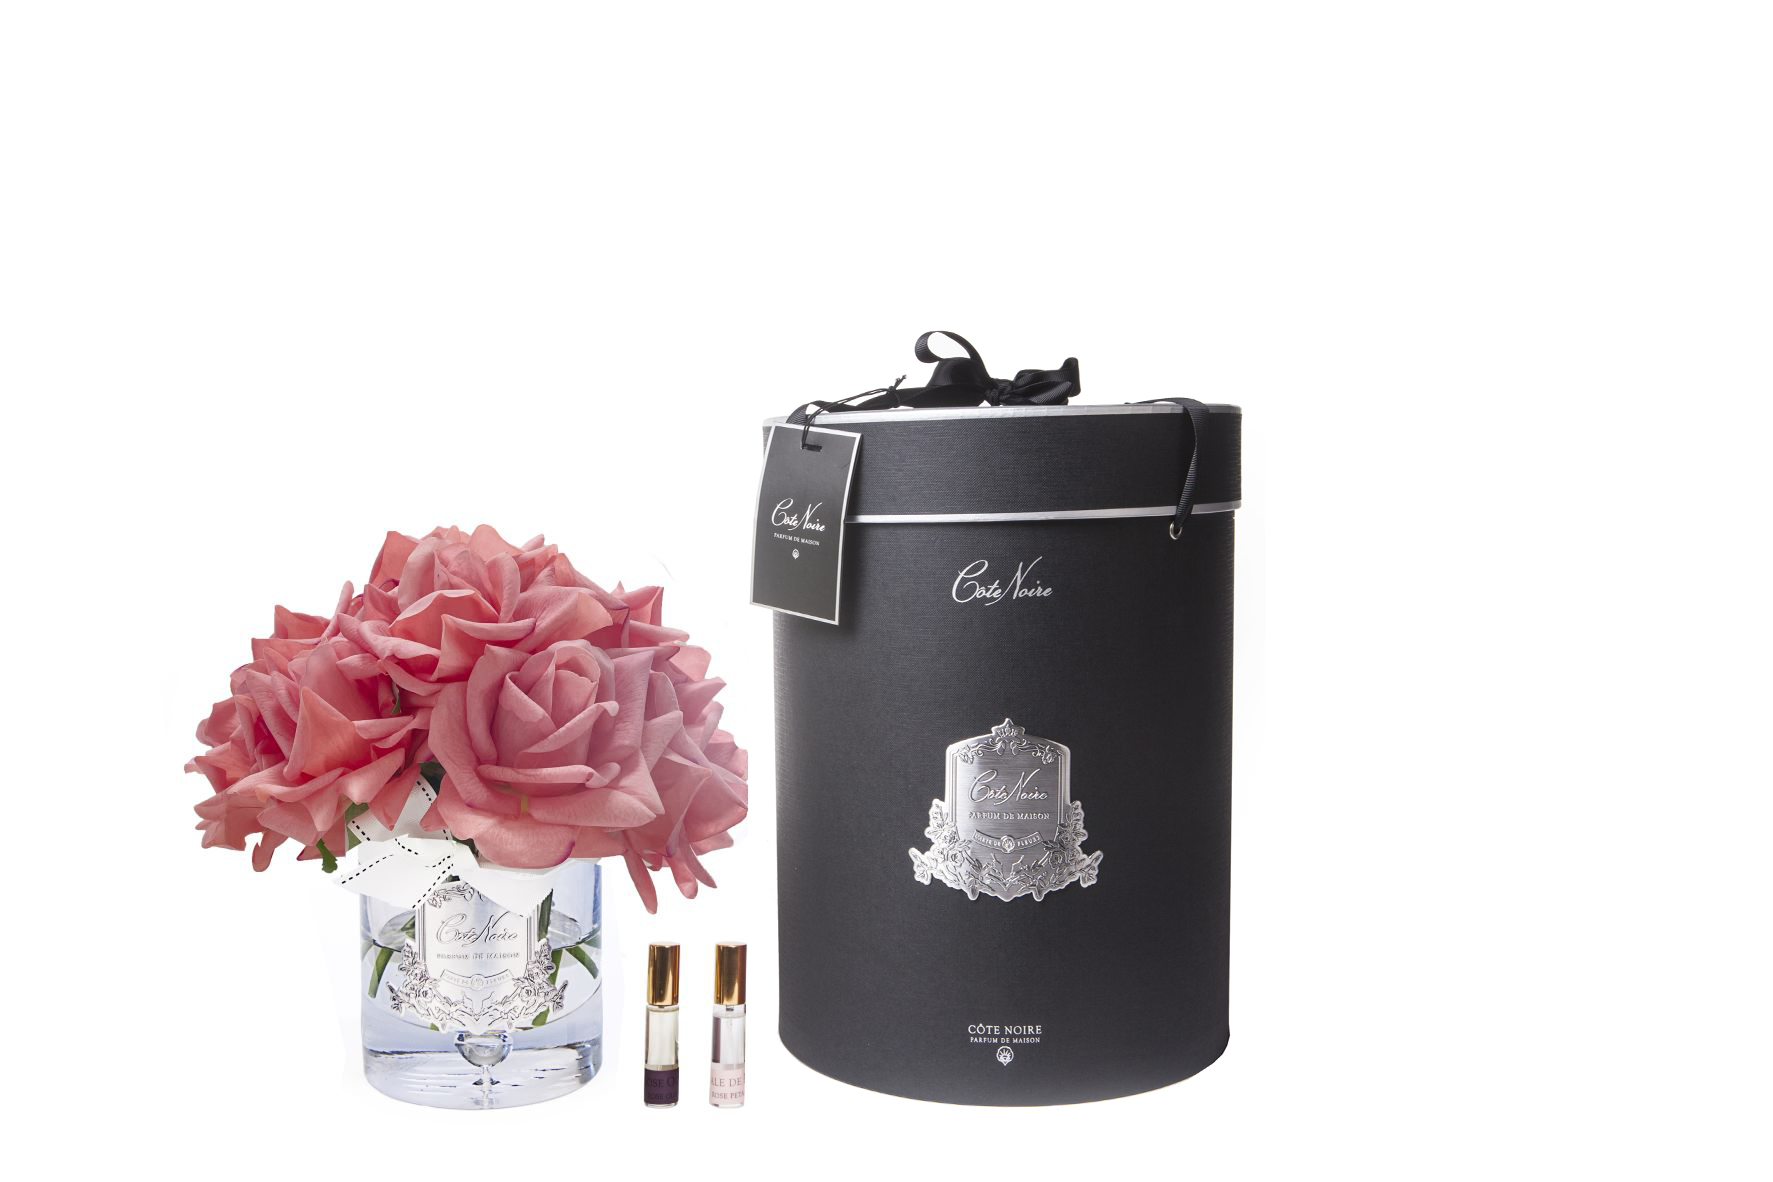 13 pfirsichfarbene rosen arrangiert in einer edlen glasvase, zwei parfumsprays und eine luxurioese runde geschenkbox in schwarz.